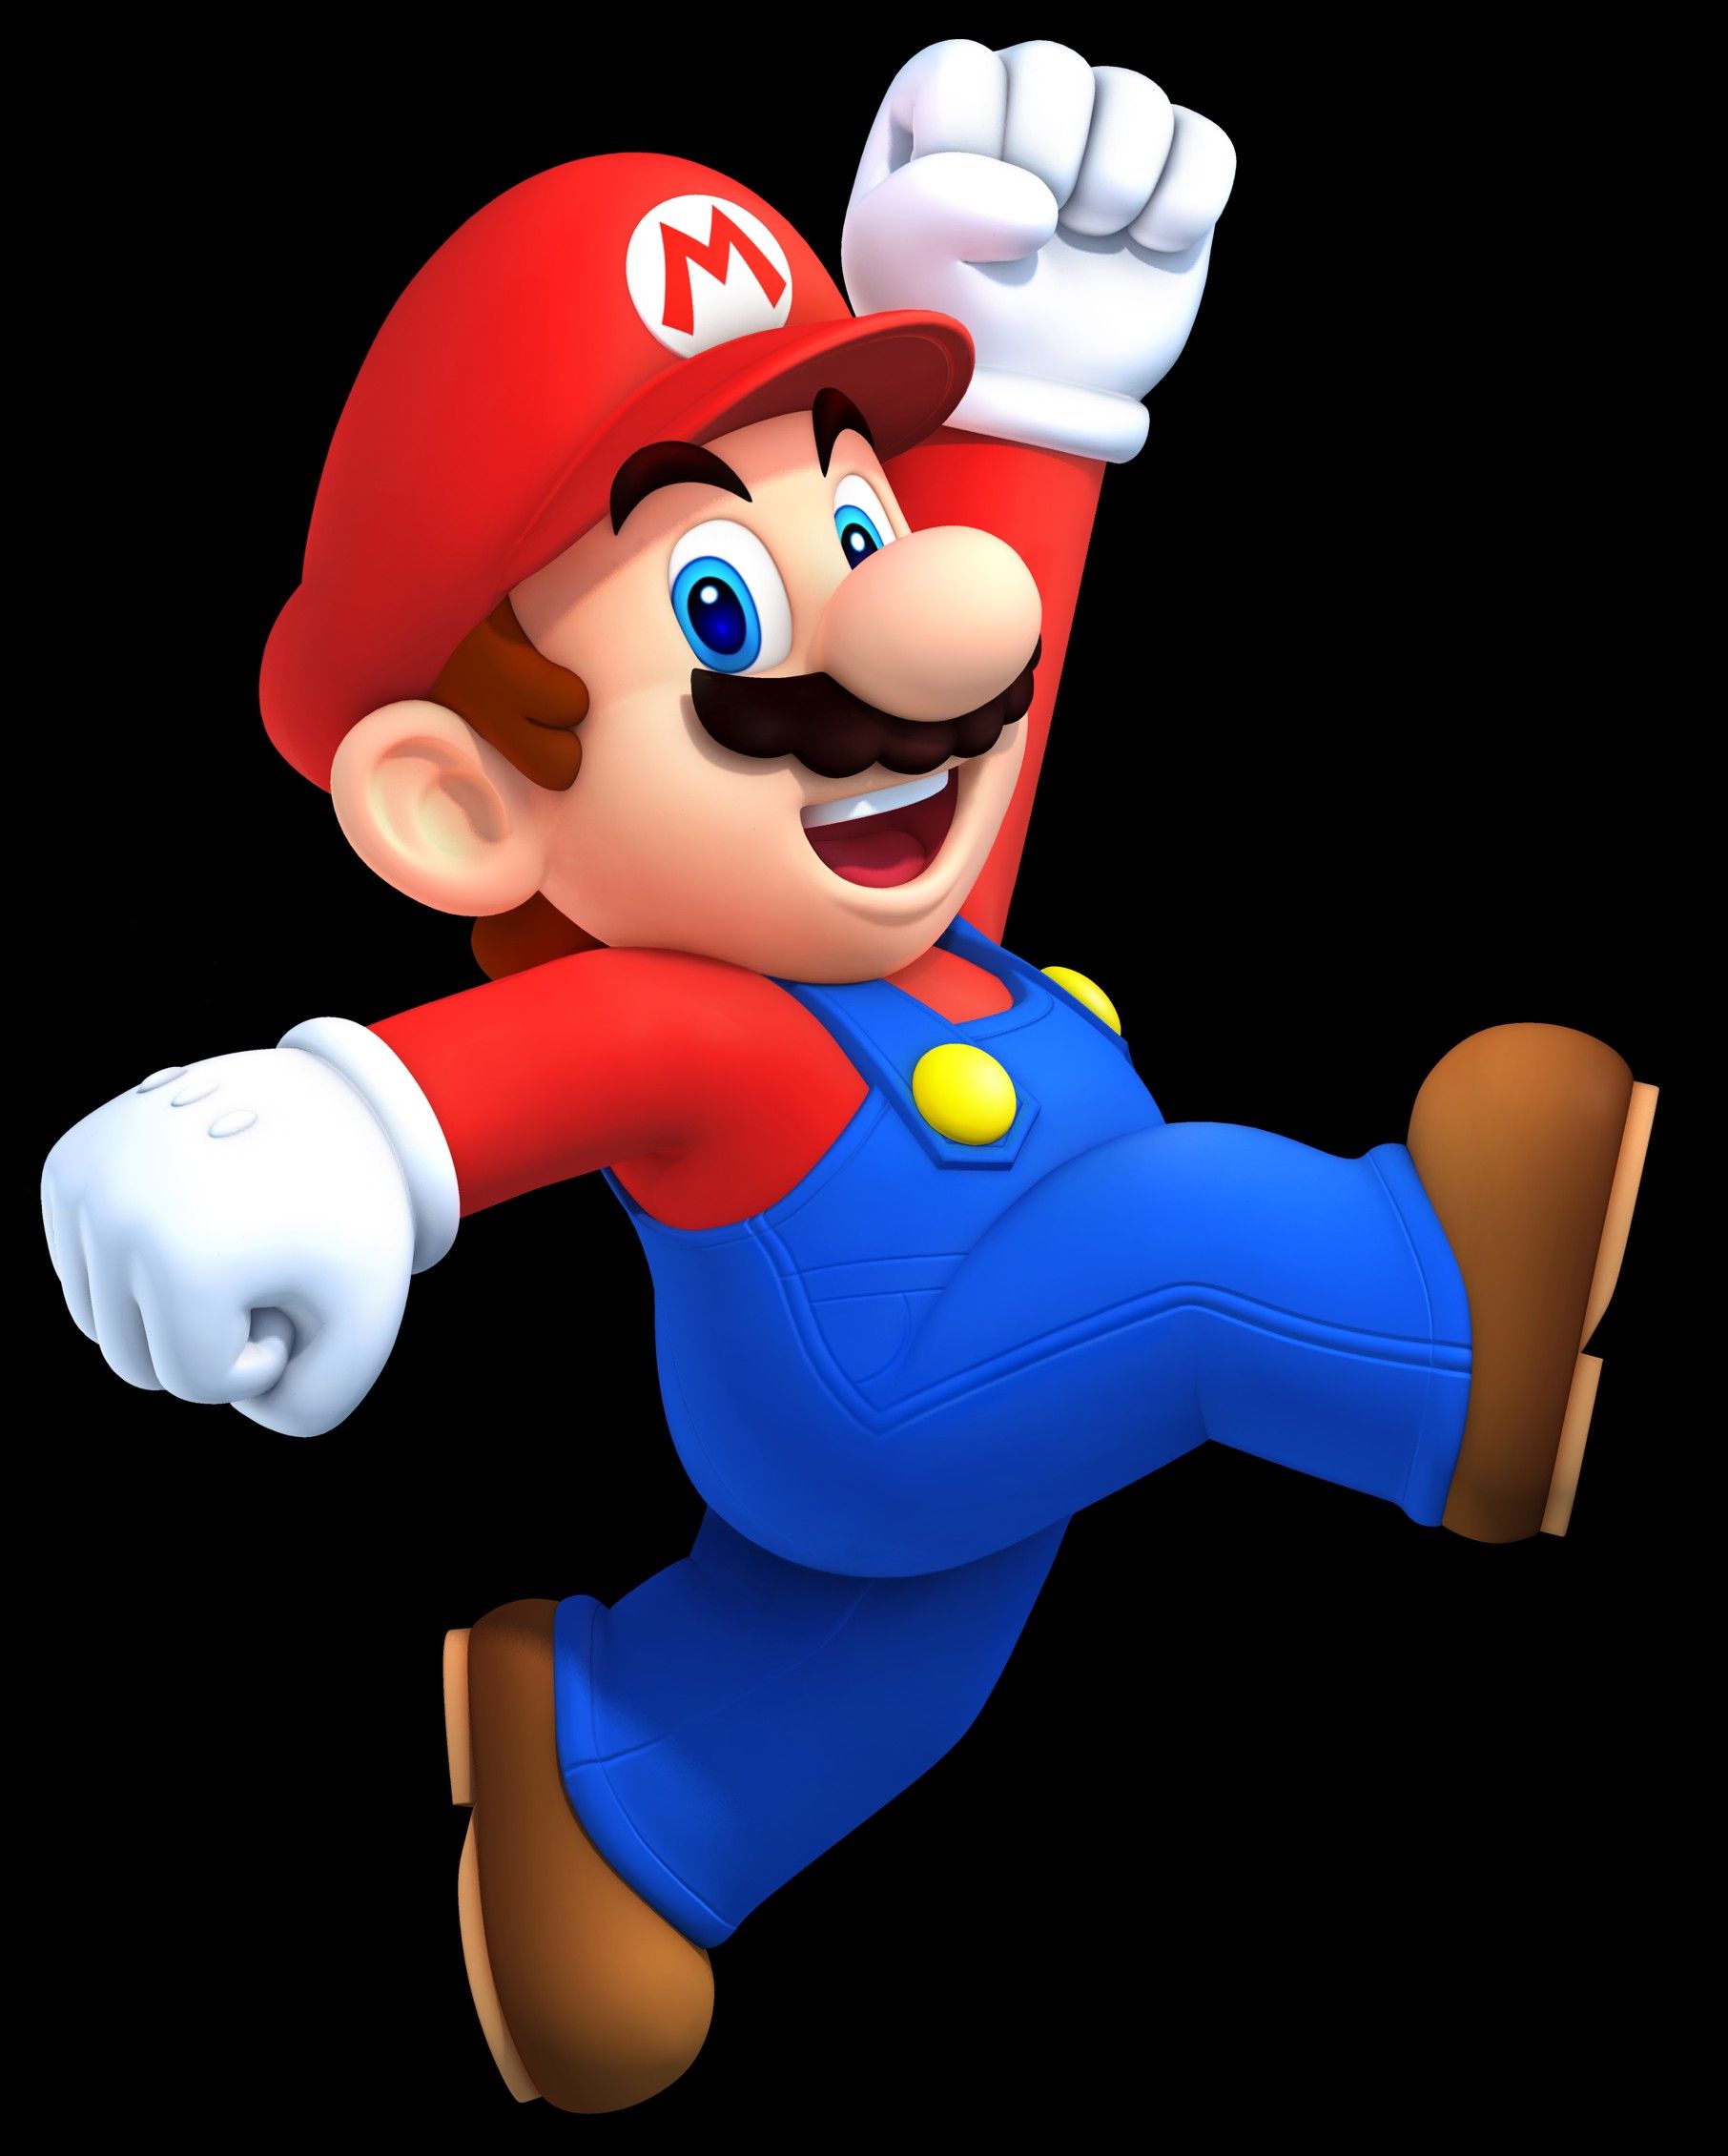 Fondos de Mario Bros - Los mejores fondos de Mario Bros gratis